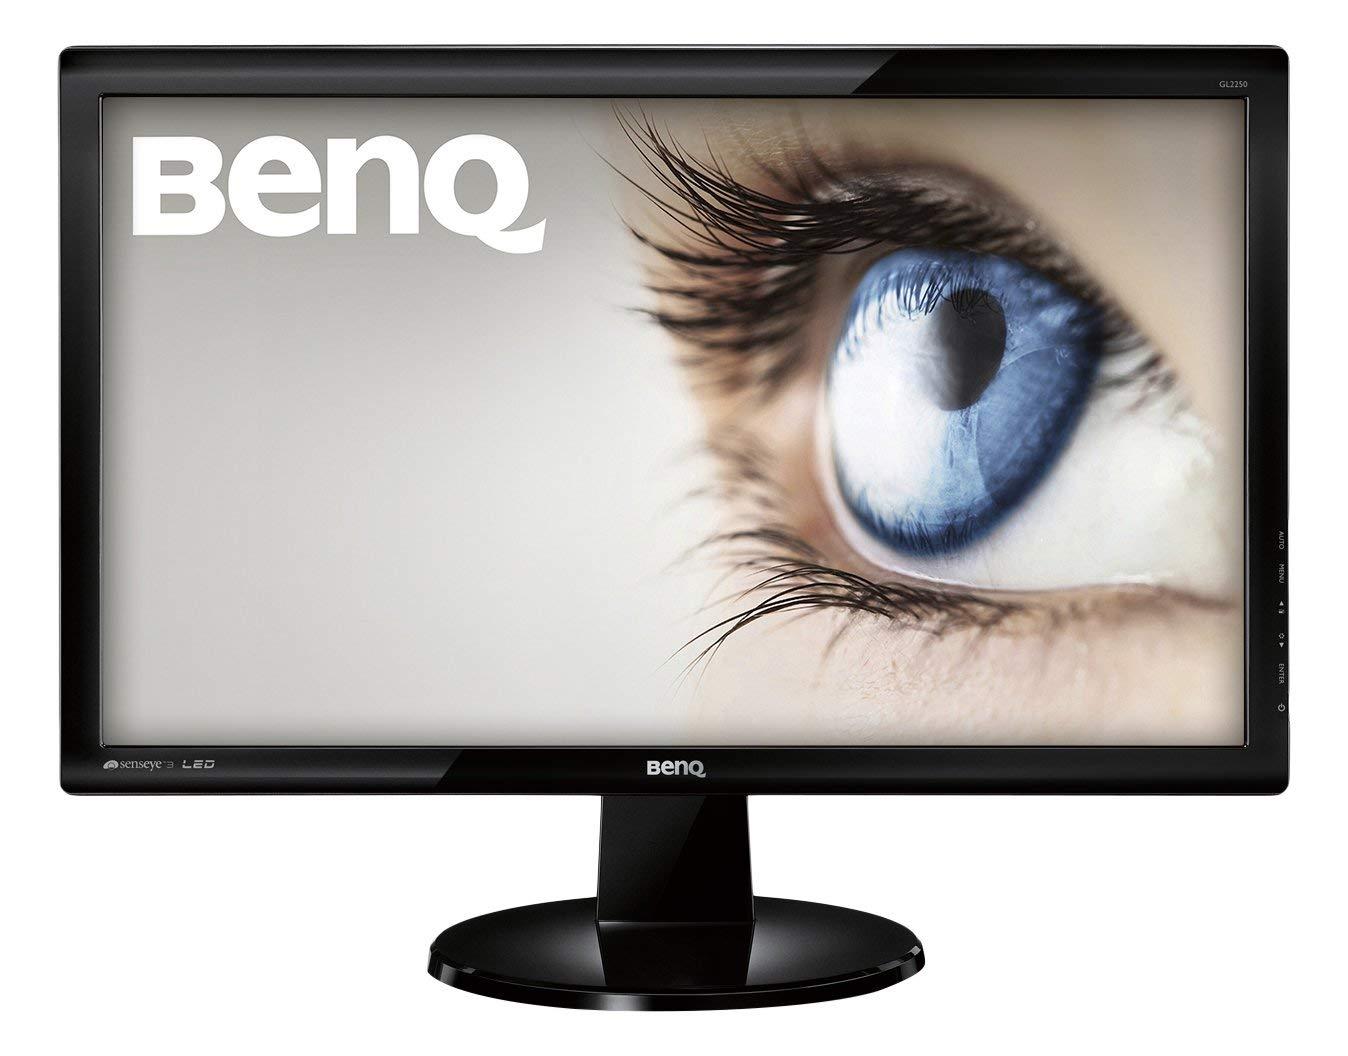 Màn hình vi tính BenQ GL2070 HD+ 20 inch bảo vệ mắt